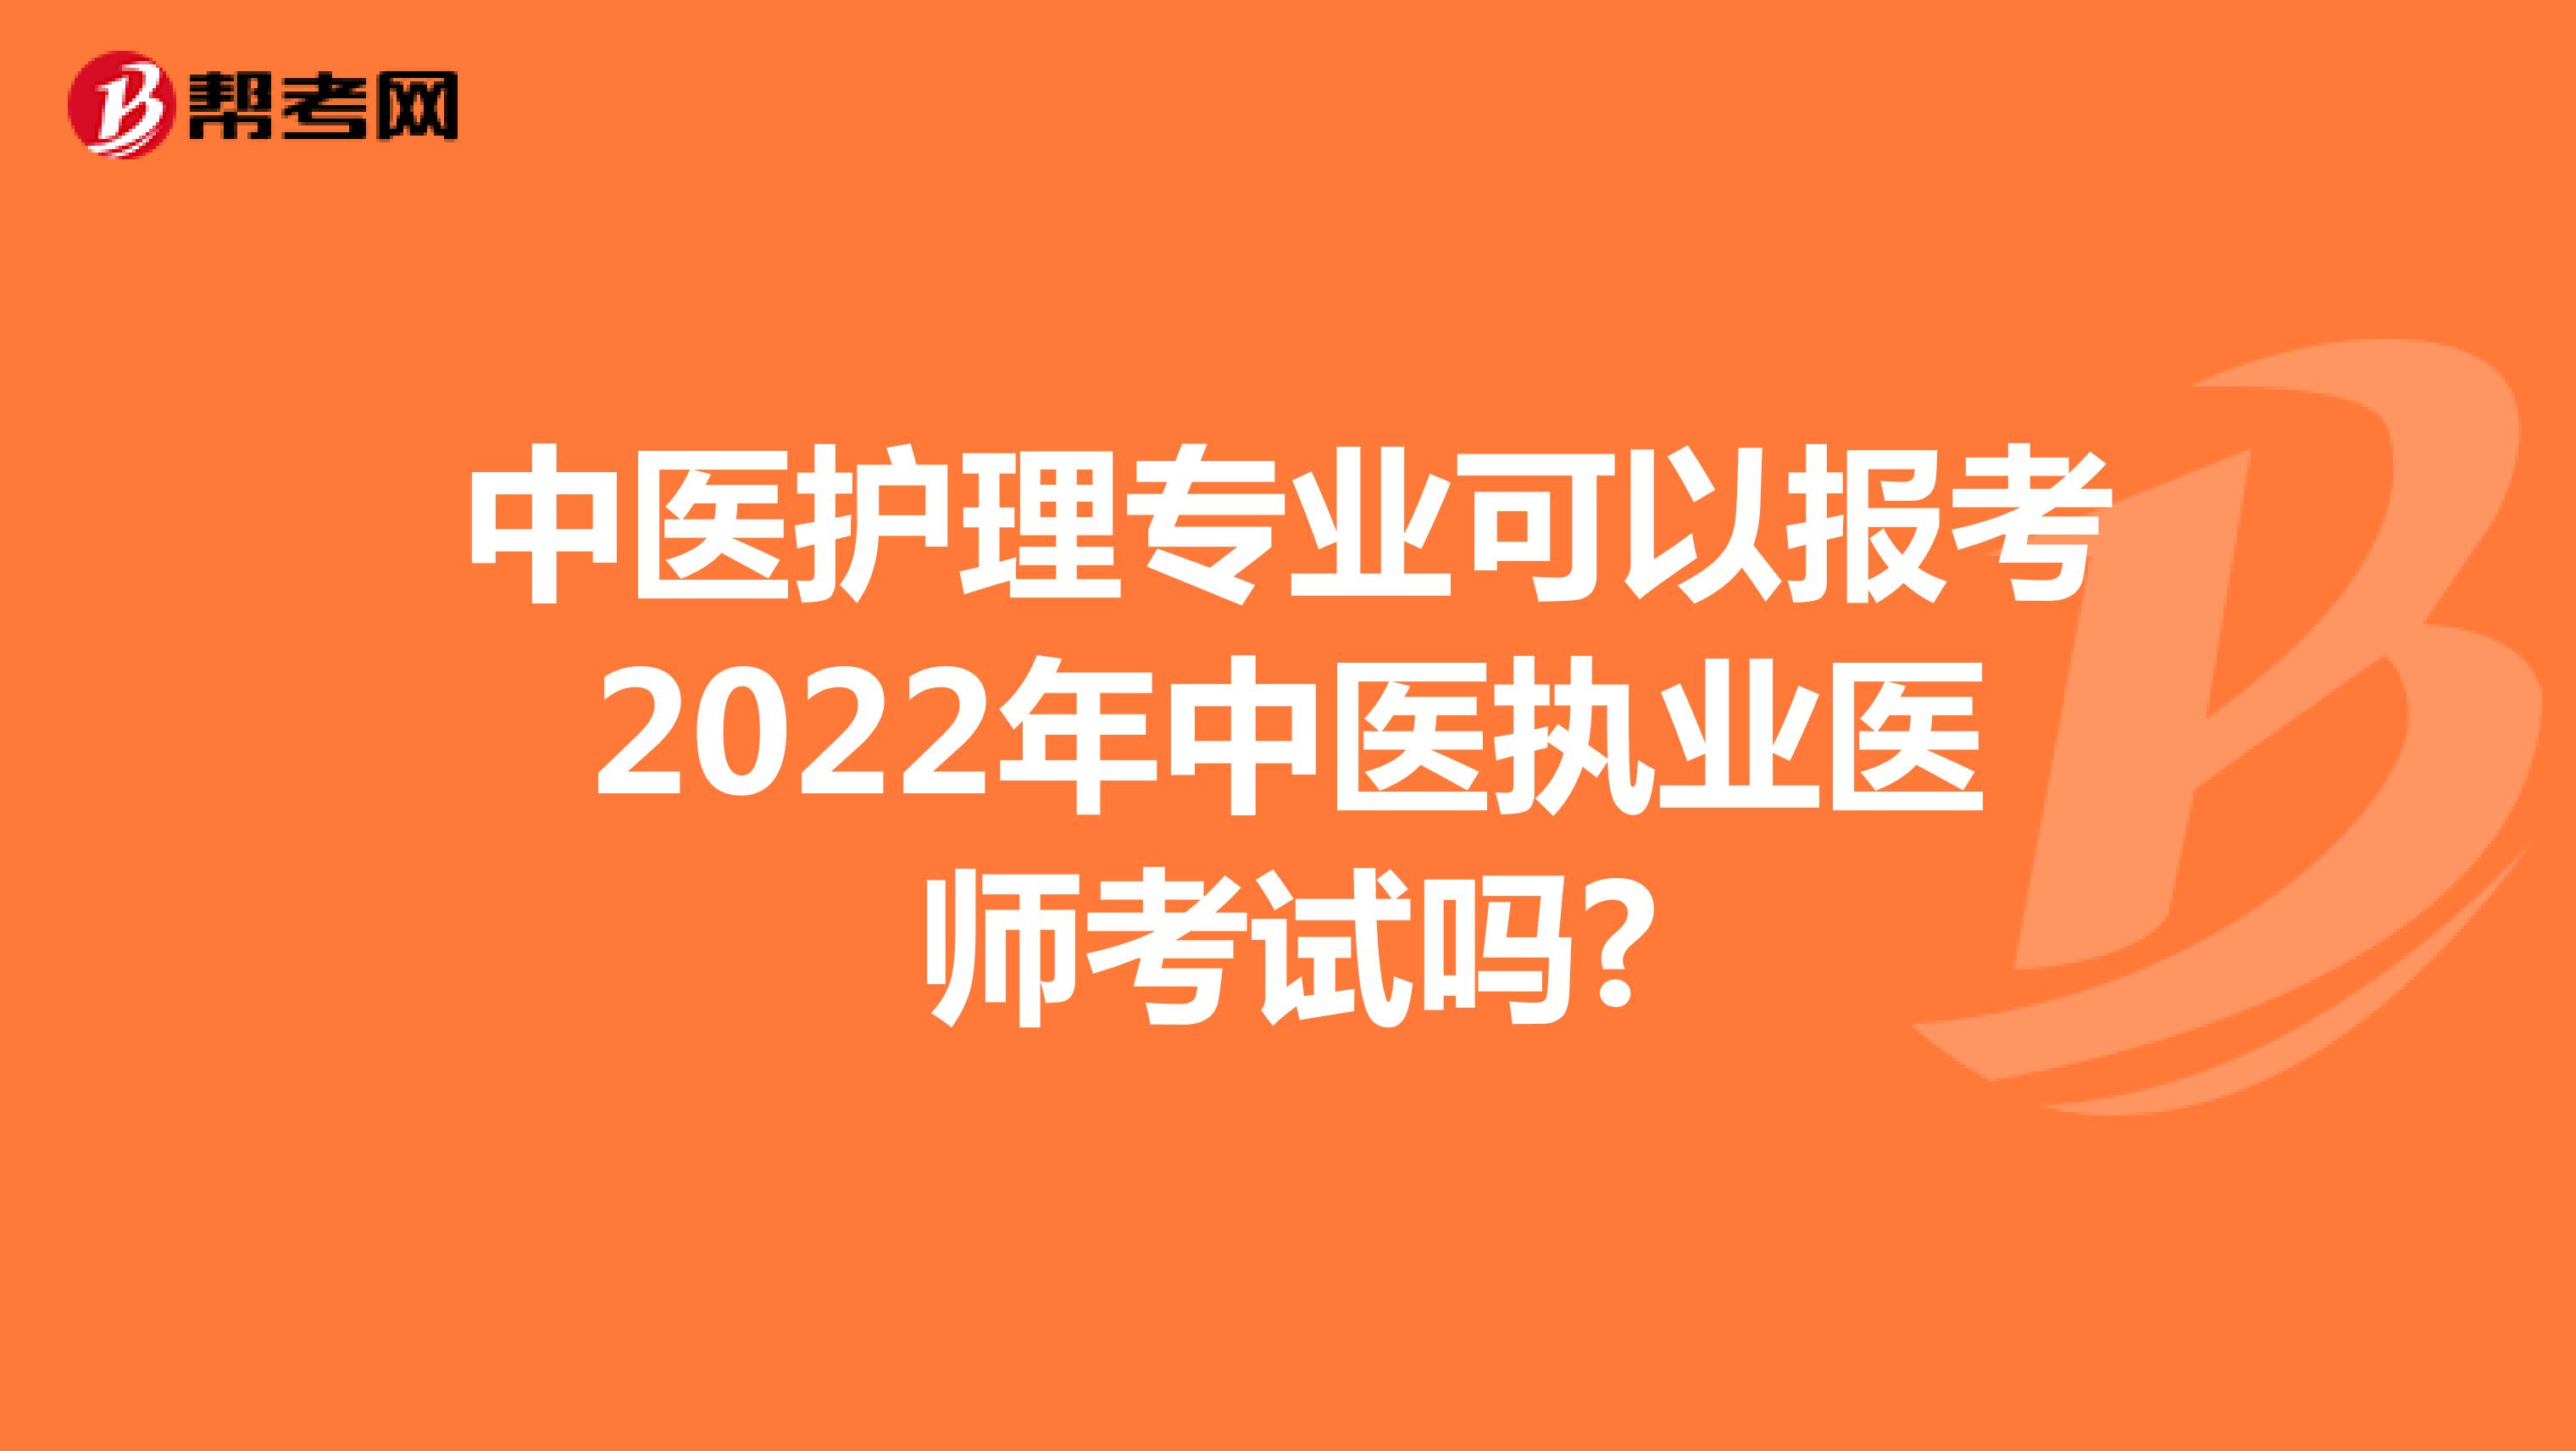 中医护理专业可以报考2022年中医执业医师考试吗?